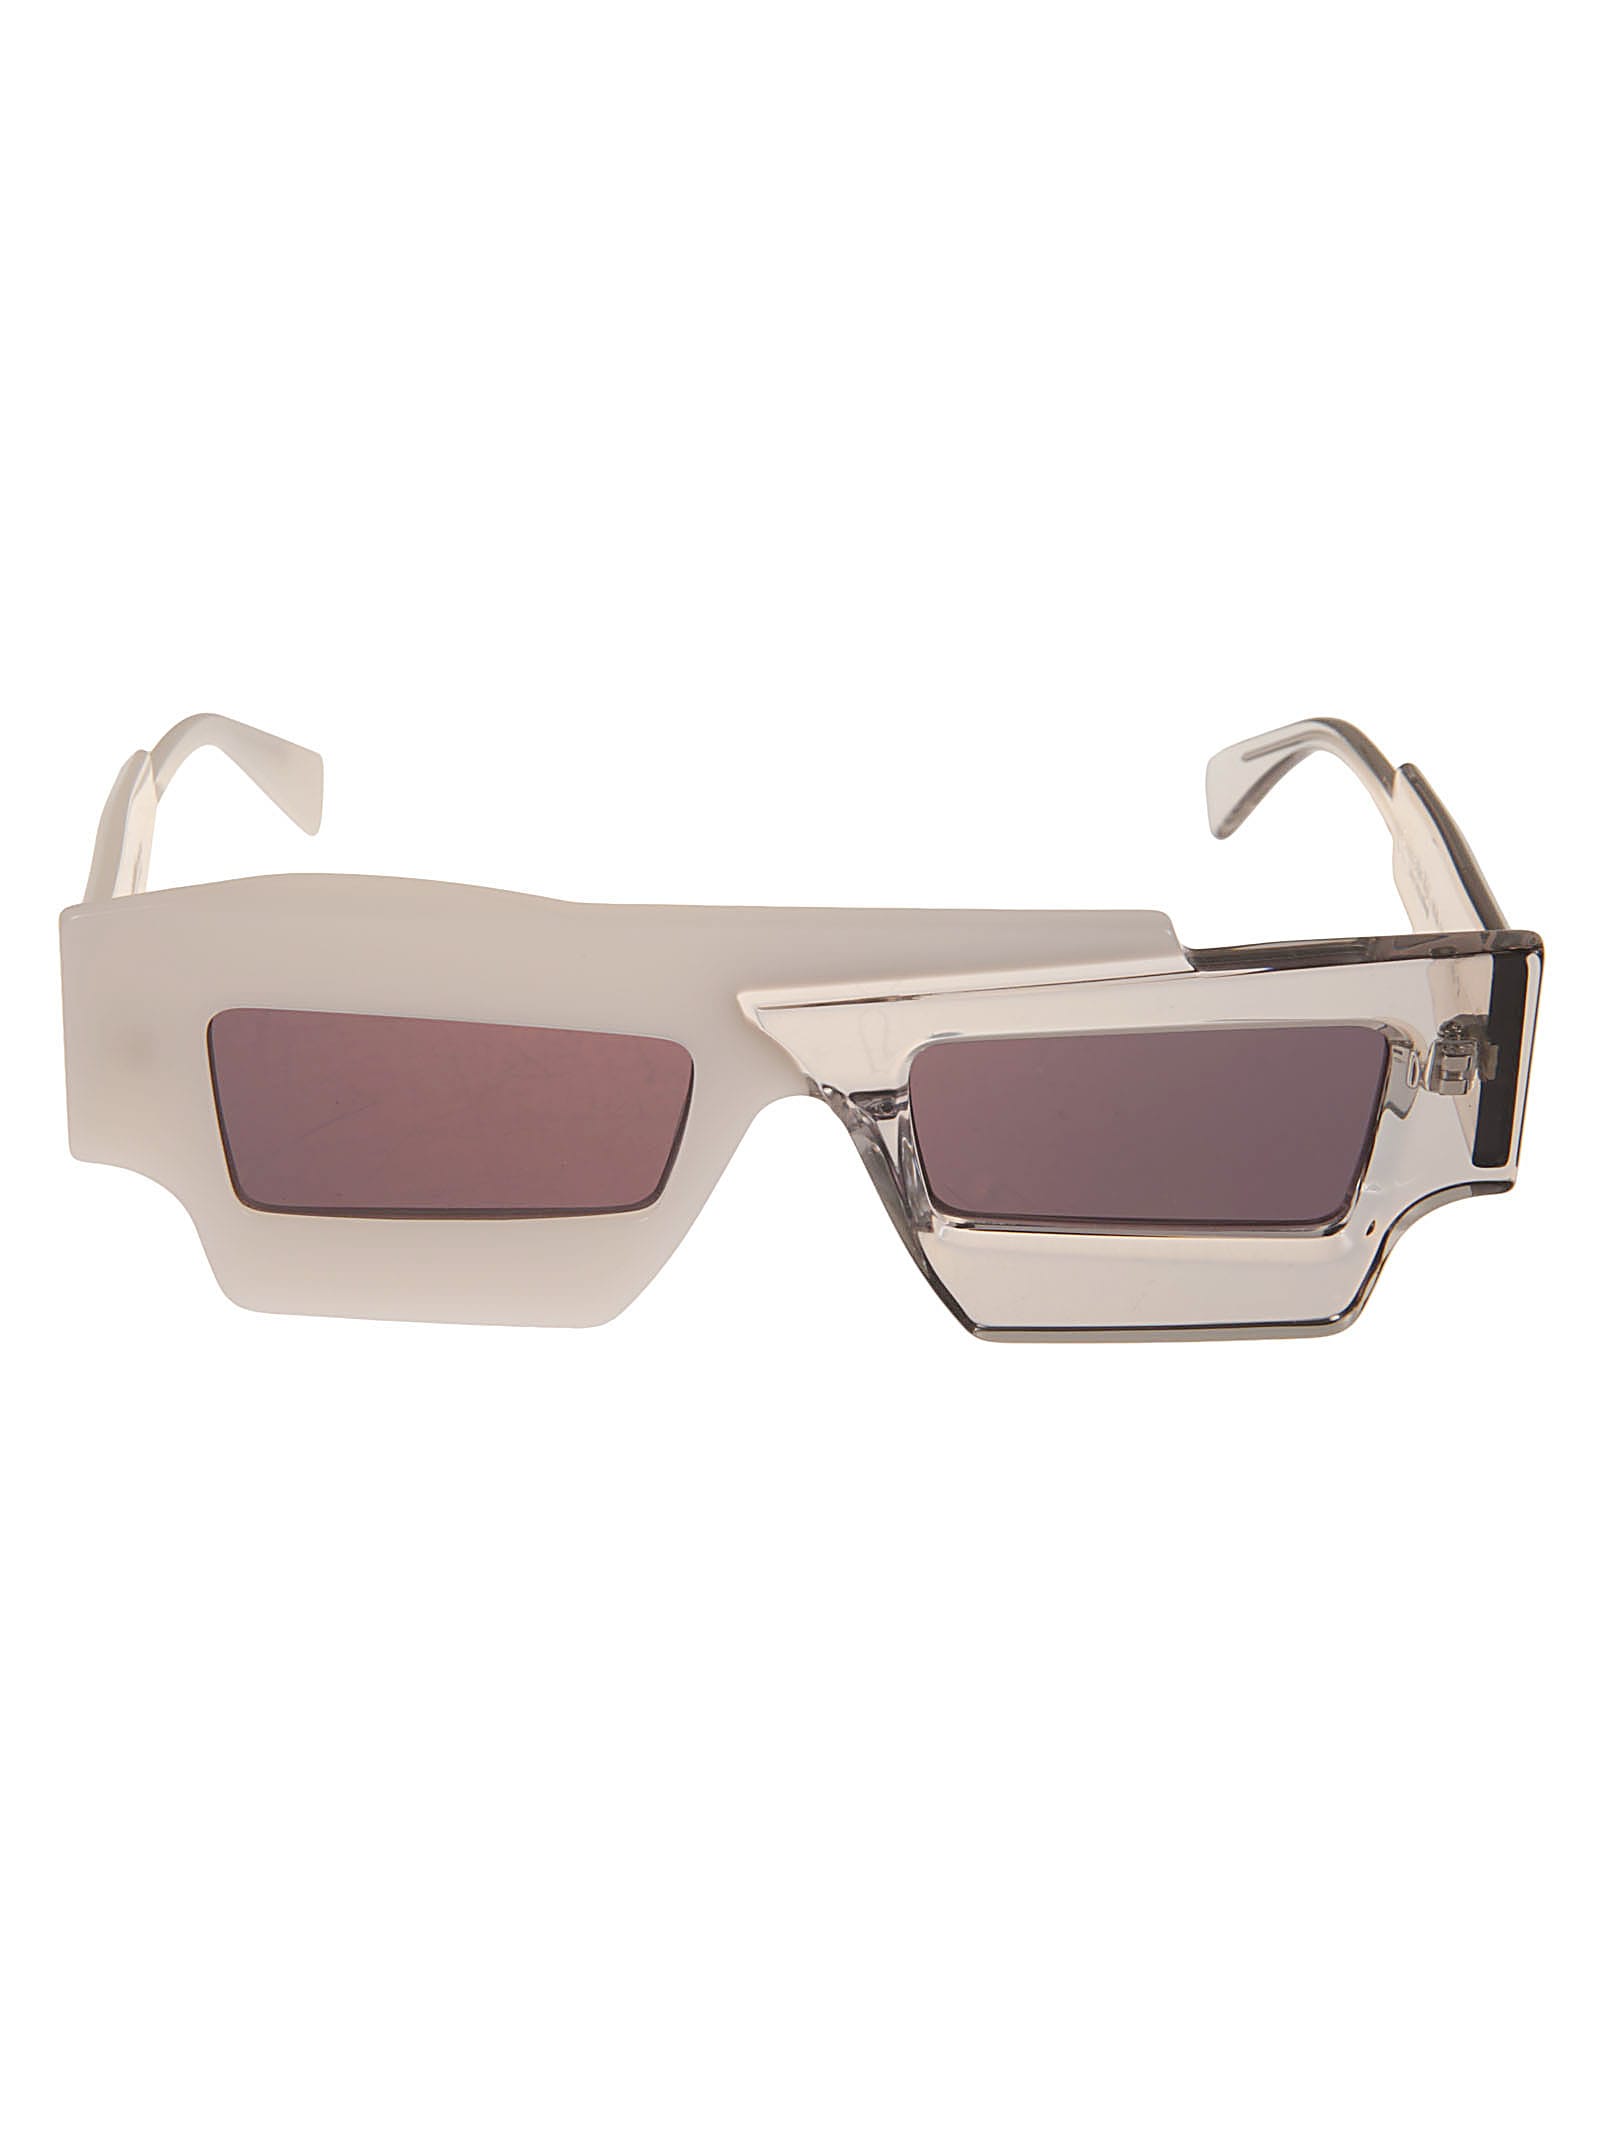 Kuboraum X12 Sunglasses In White